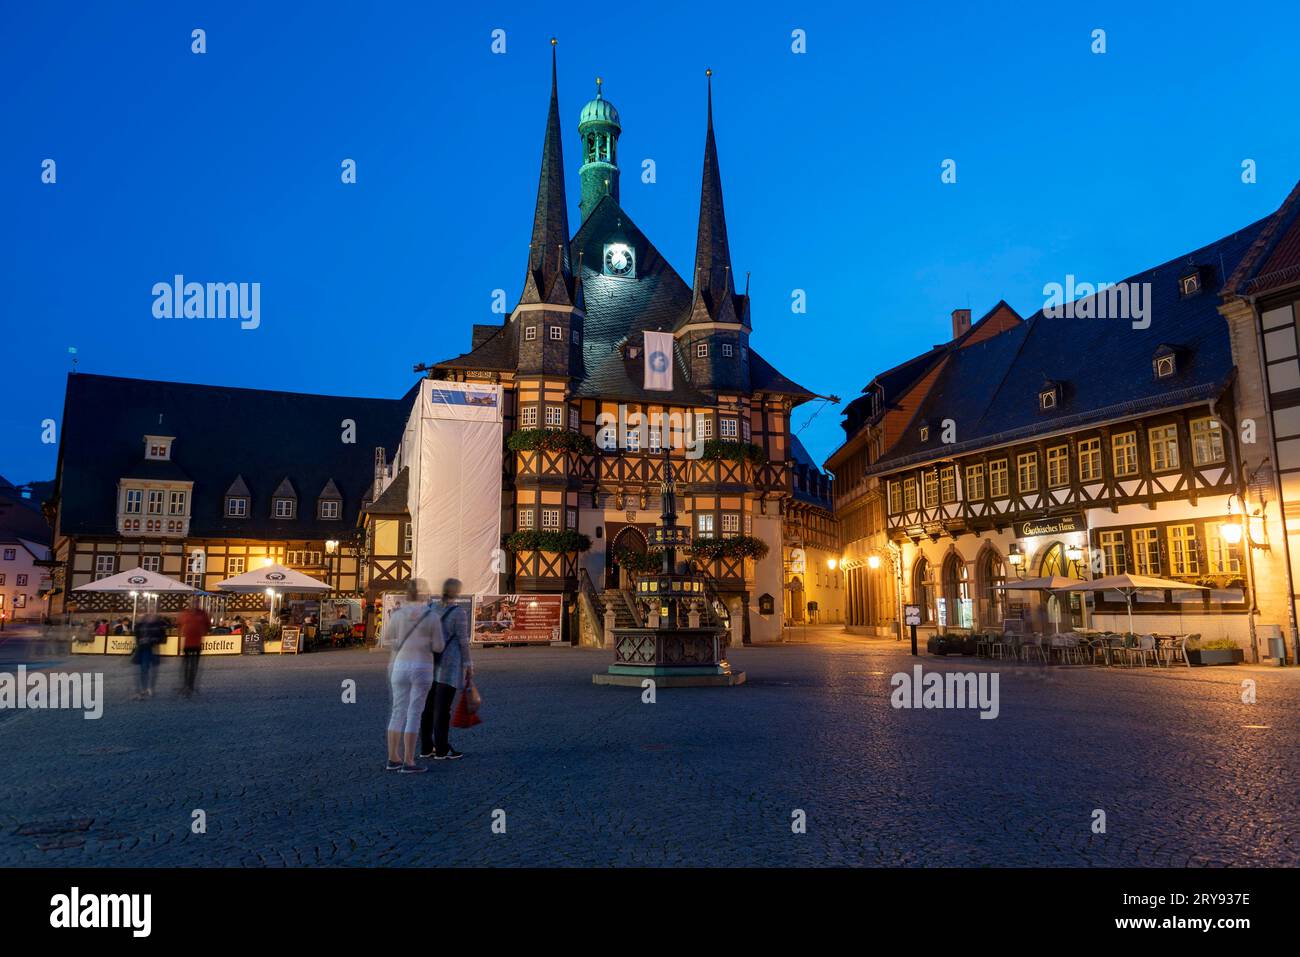 Historisches Rathaus, Stifterbrunnen, Fachwerkhäuser zur blauen Stunde, Wernigerode, Sachsen-Anhalt, Deutschland Stockfoto